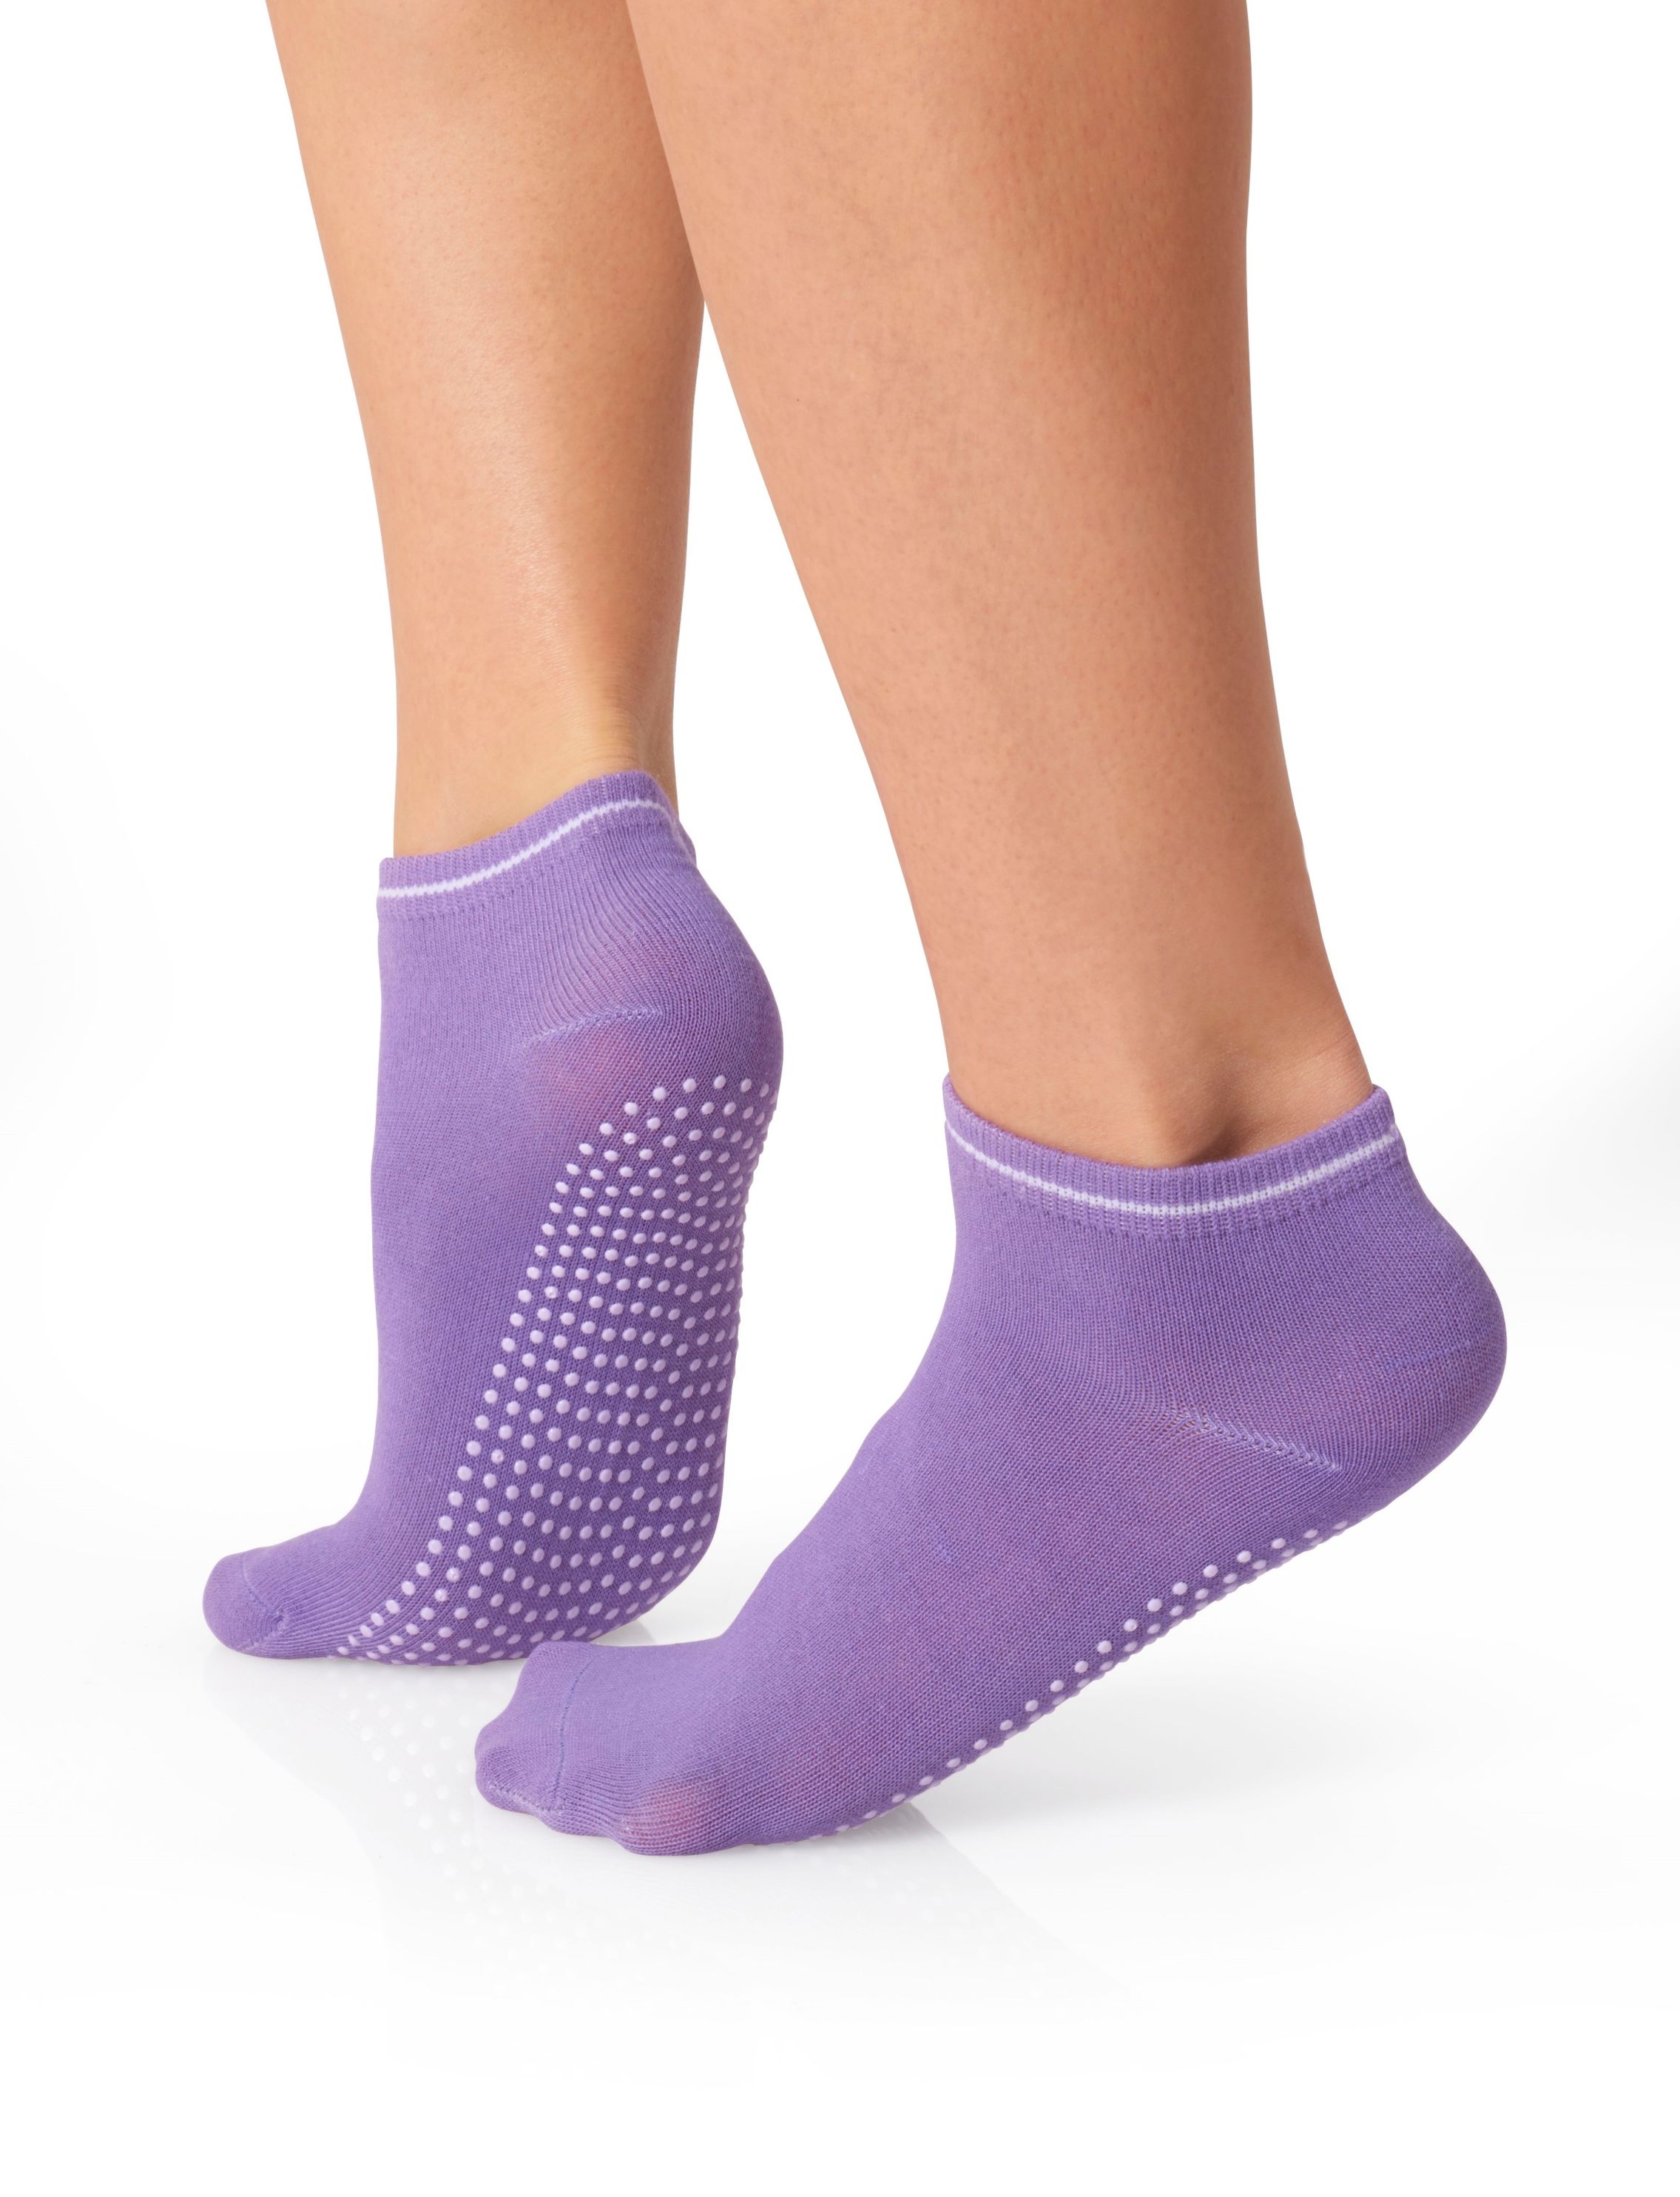 Orbisana Yoga- und Pilates-Socken, 3 Paar online kaufen - Orbisana